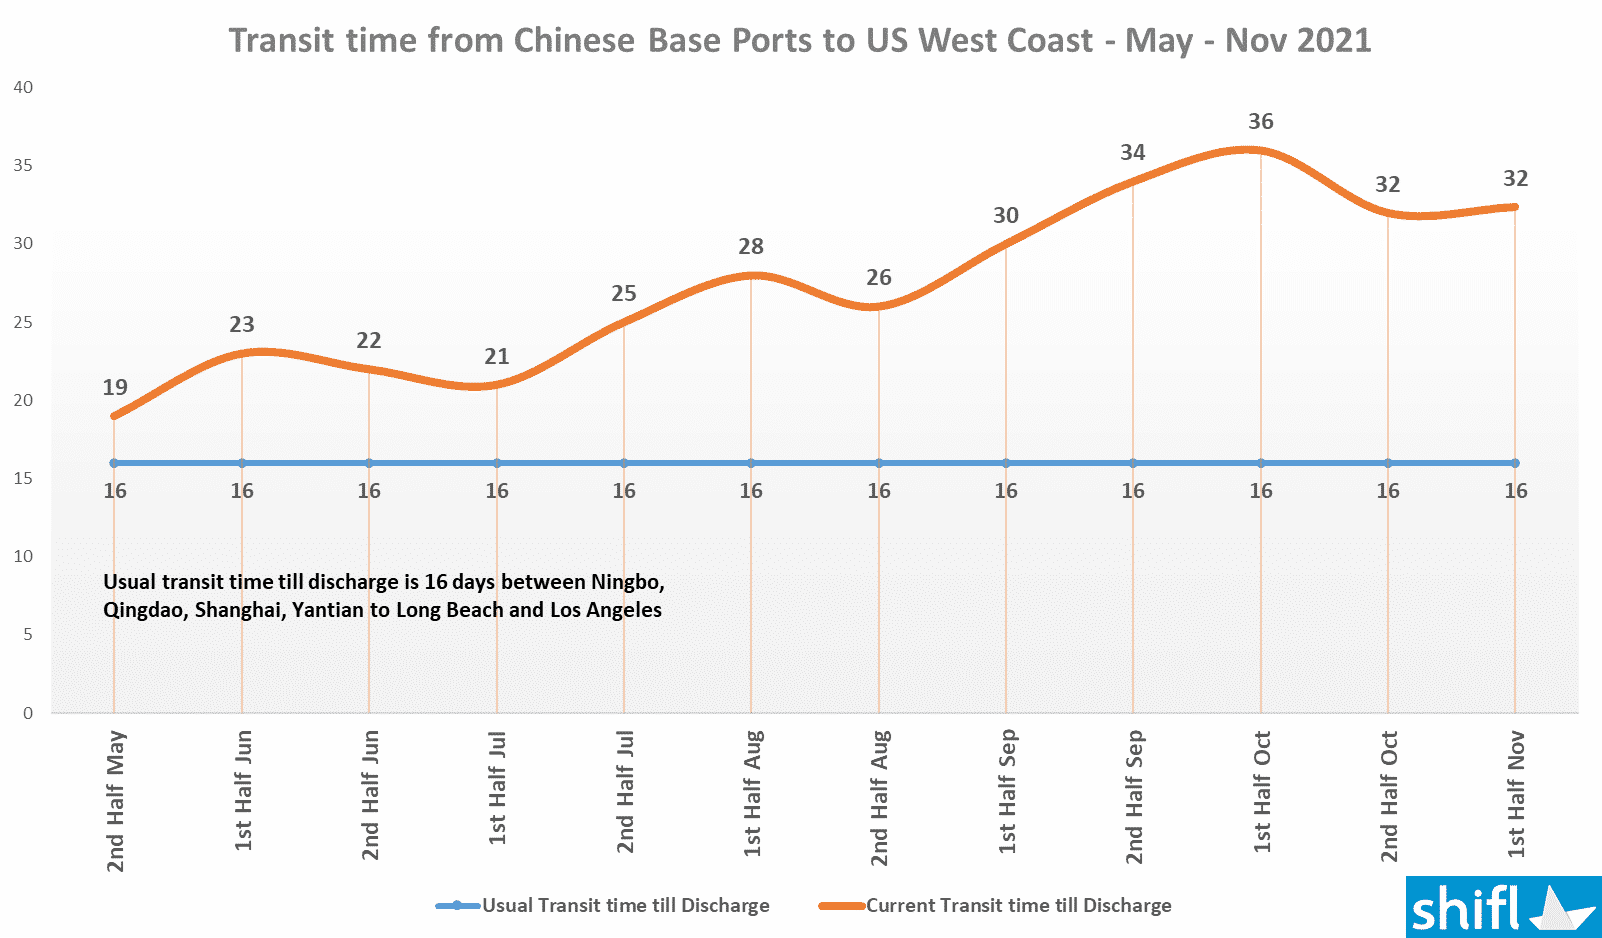 Graphique montrant le temps de transit des ports de base chinois vers la côte ouest des États-Unis - novembre 2021